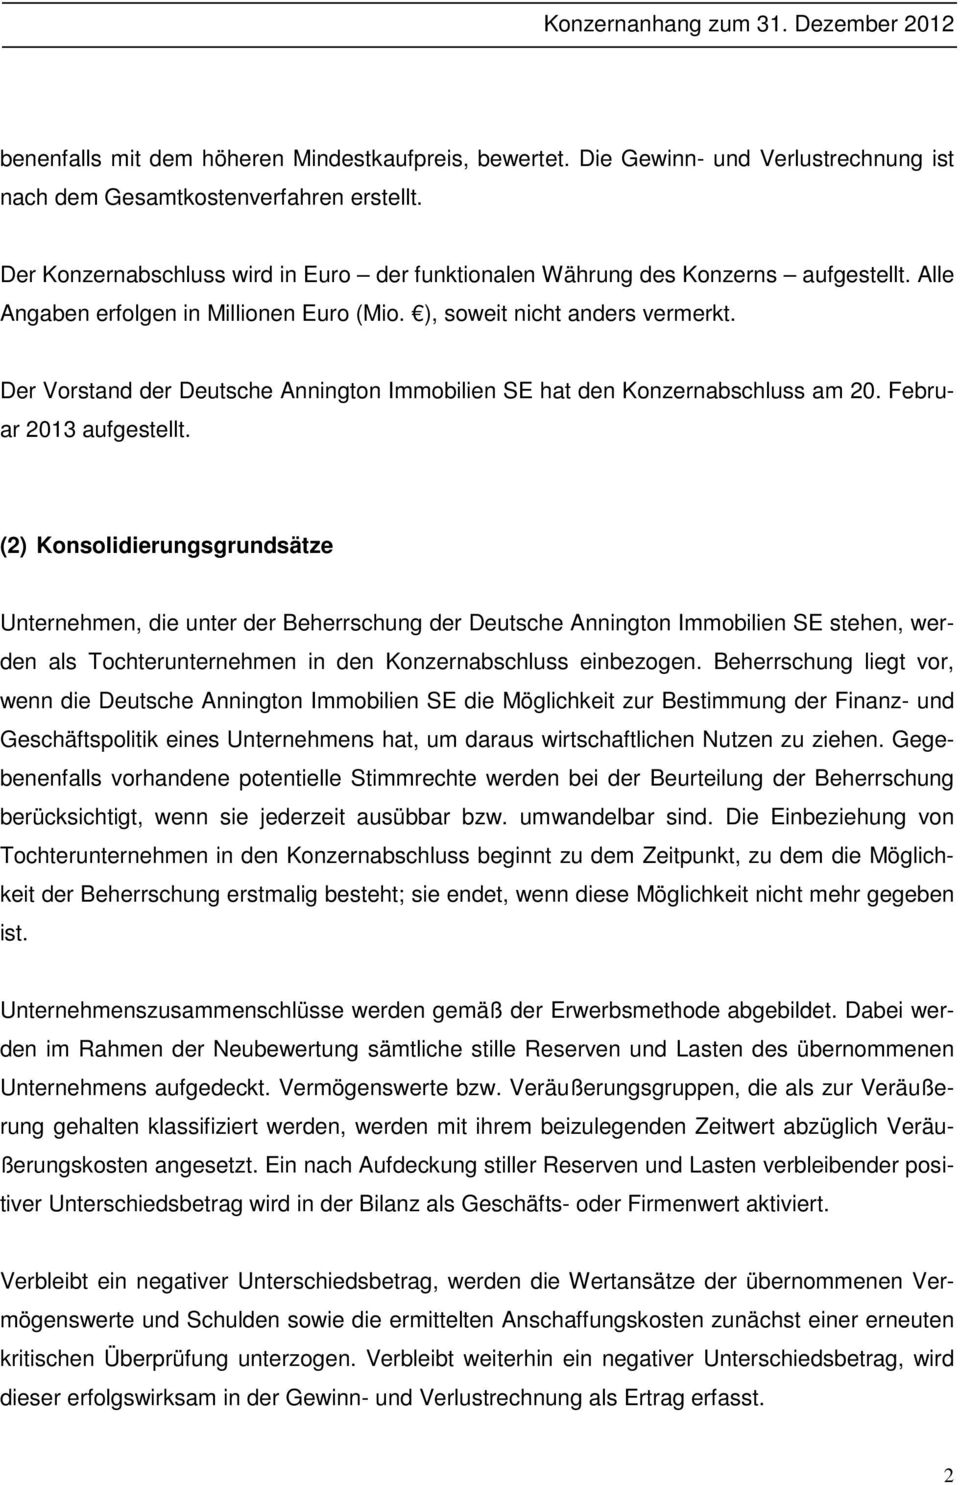 Der Vorstand der Deutsche Annington Immobilien SE hat den Konzernabschluss am 20. Februar 2013 aufgestellt.